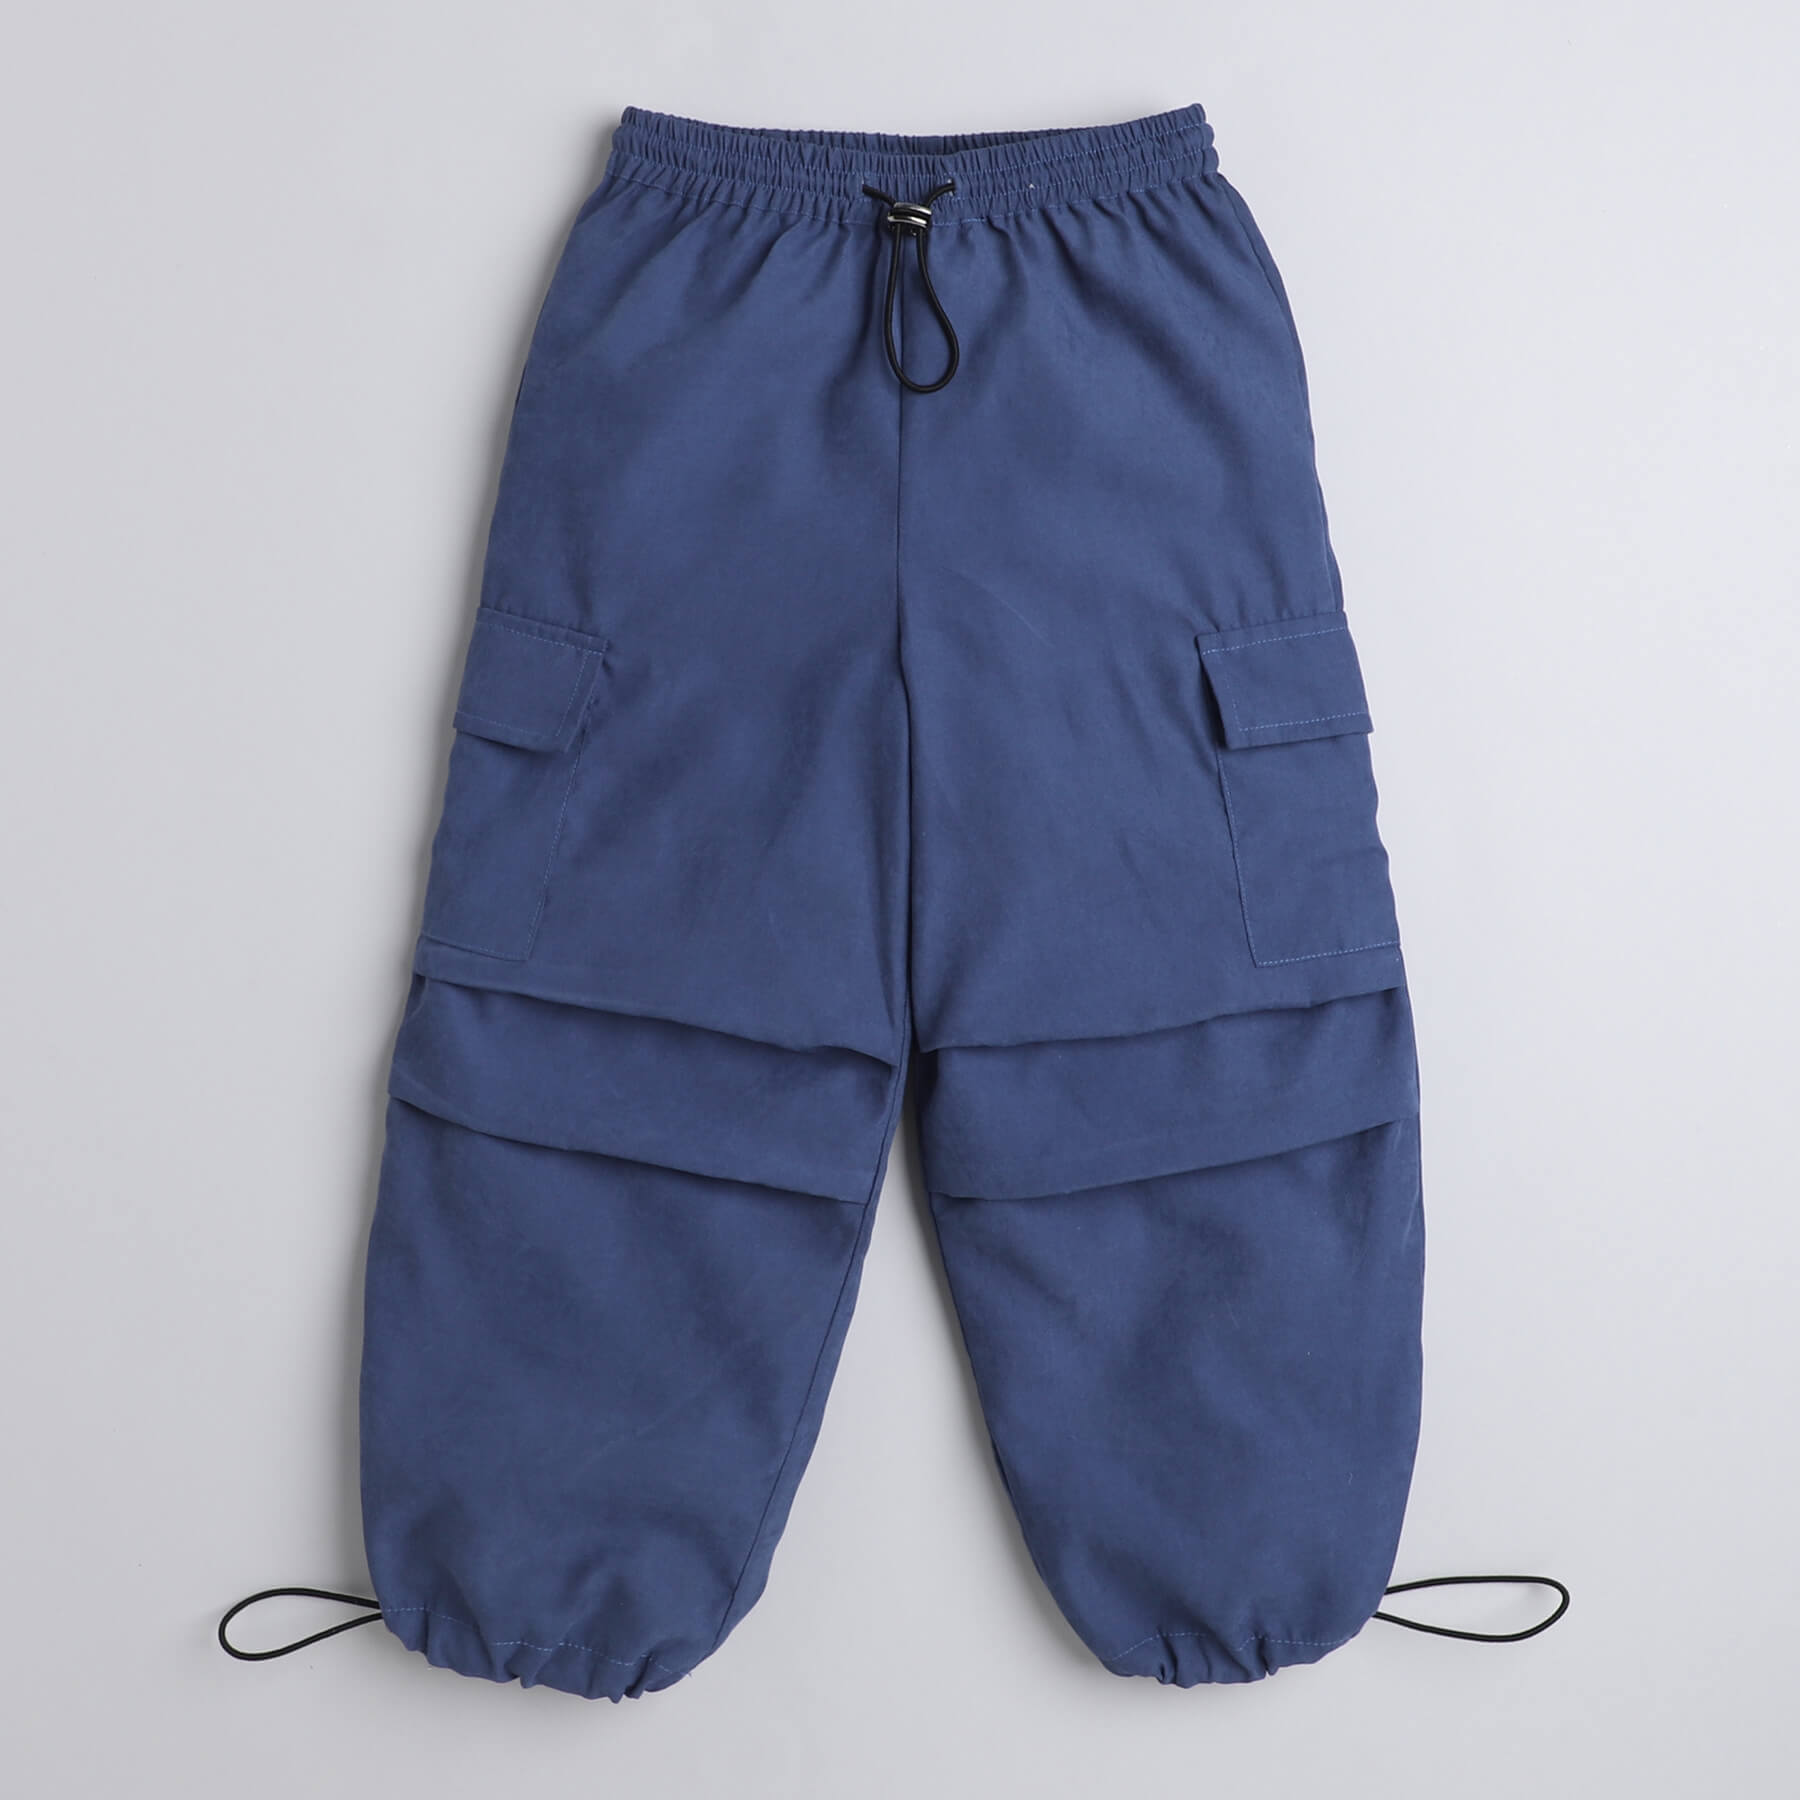 Shop Halter Neck Crop Top And Parachute Pant Set-Black/Blue Online